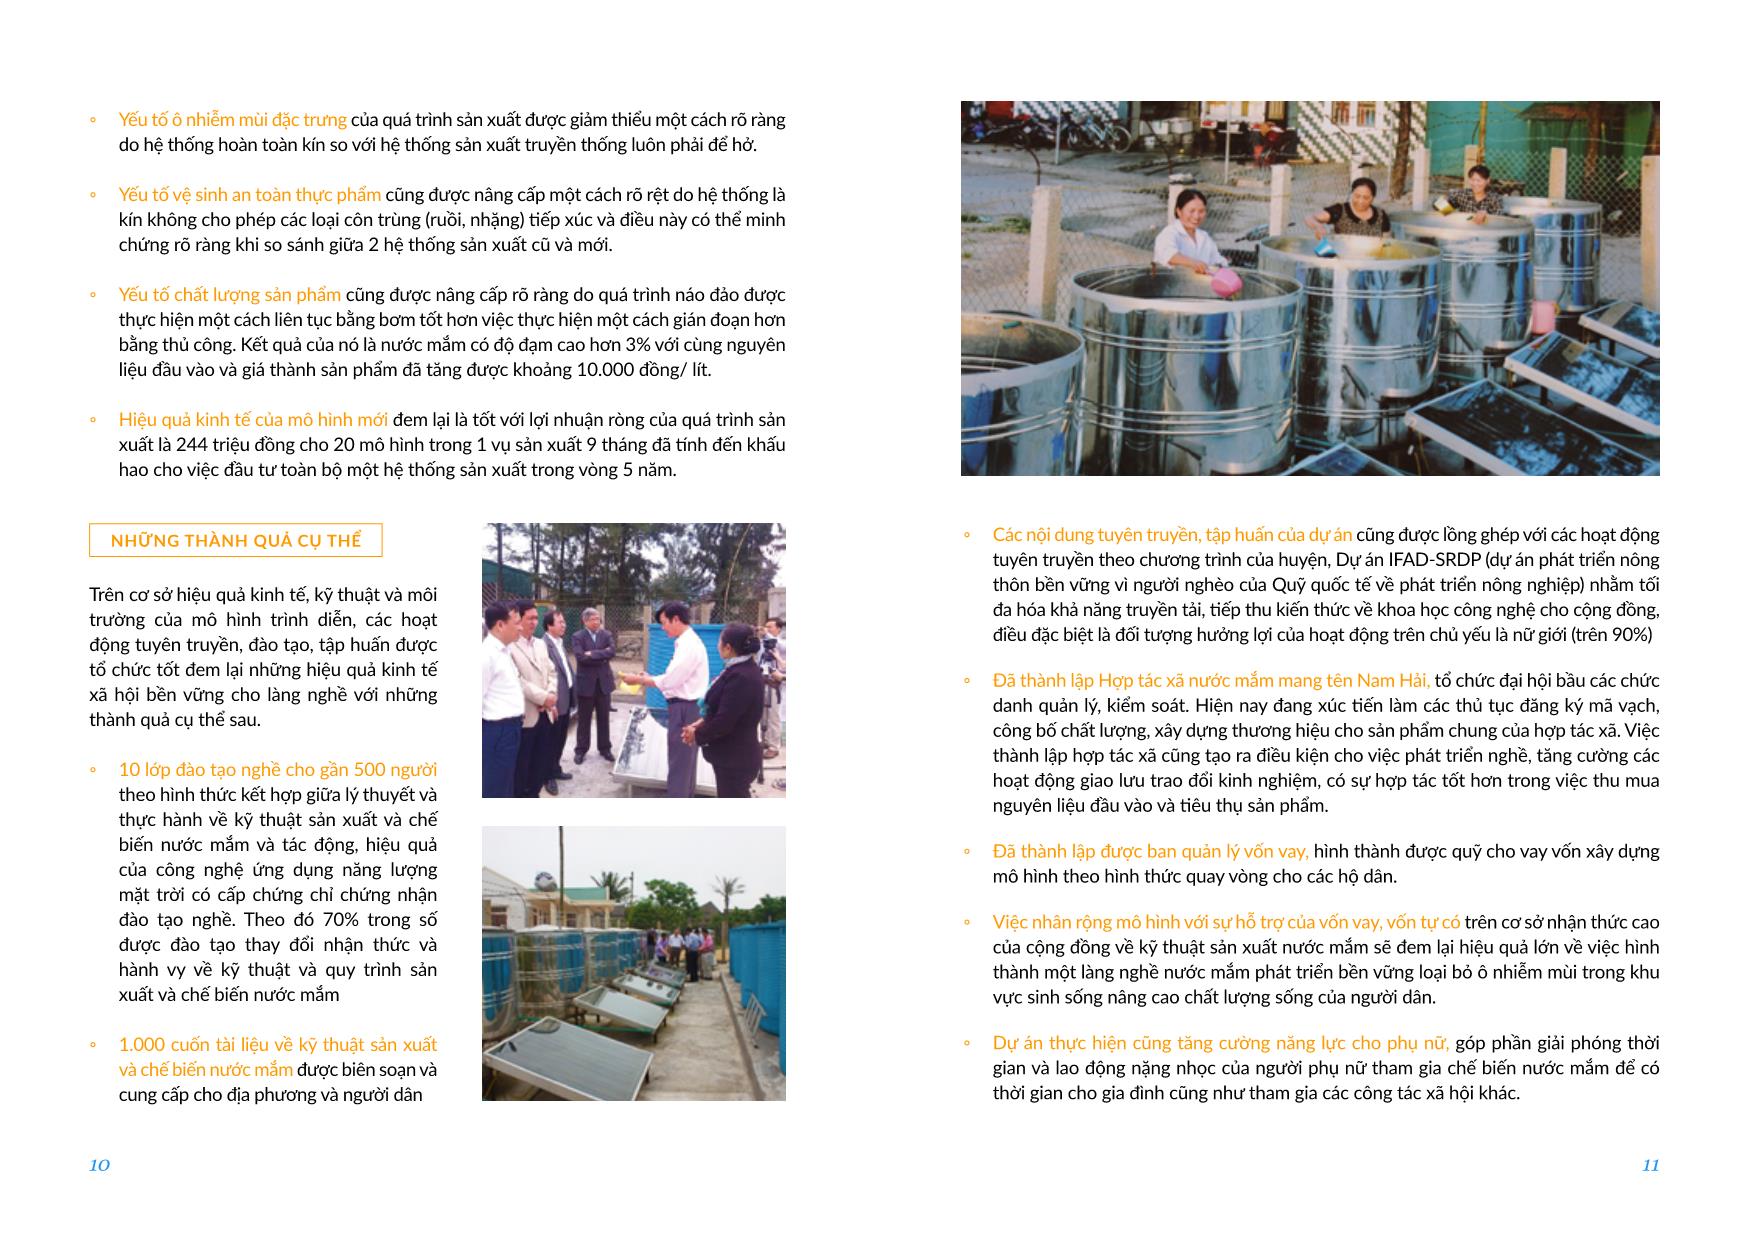 Dự án Ứng dụng năng lượng mặt trời trong sản xuất nước mắm tại xã Cẩm Nhượng, huyện Cẩm Xuyên, Hà Tĩnh trang 6